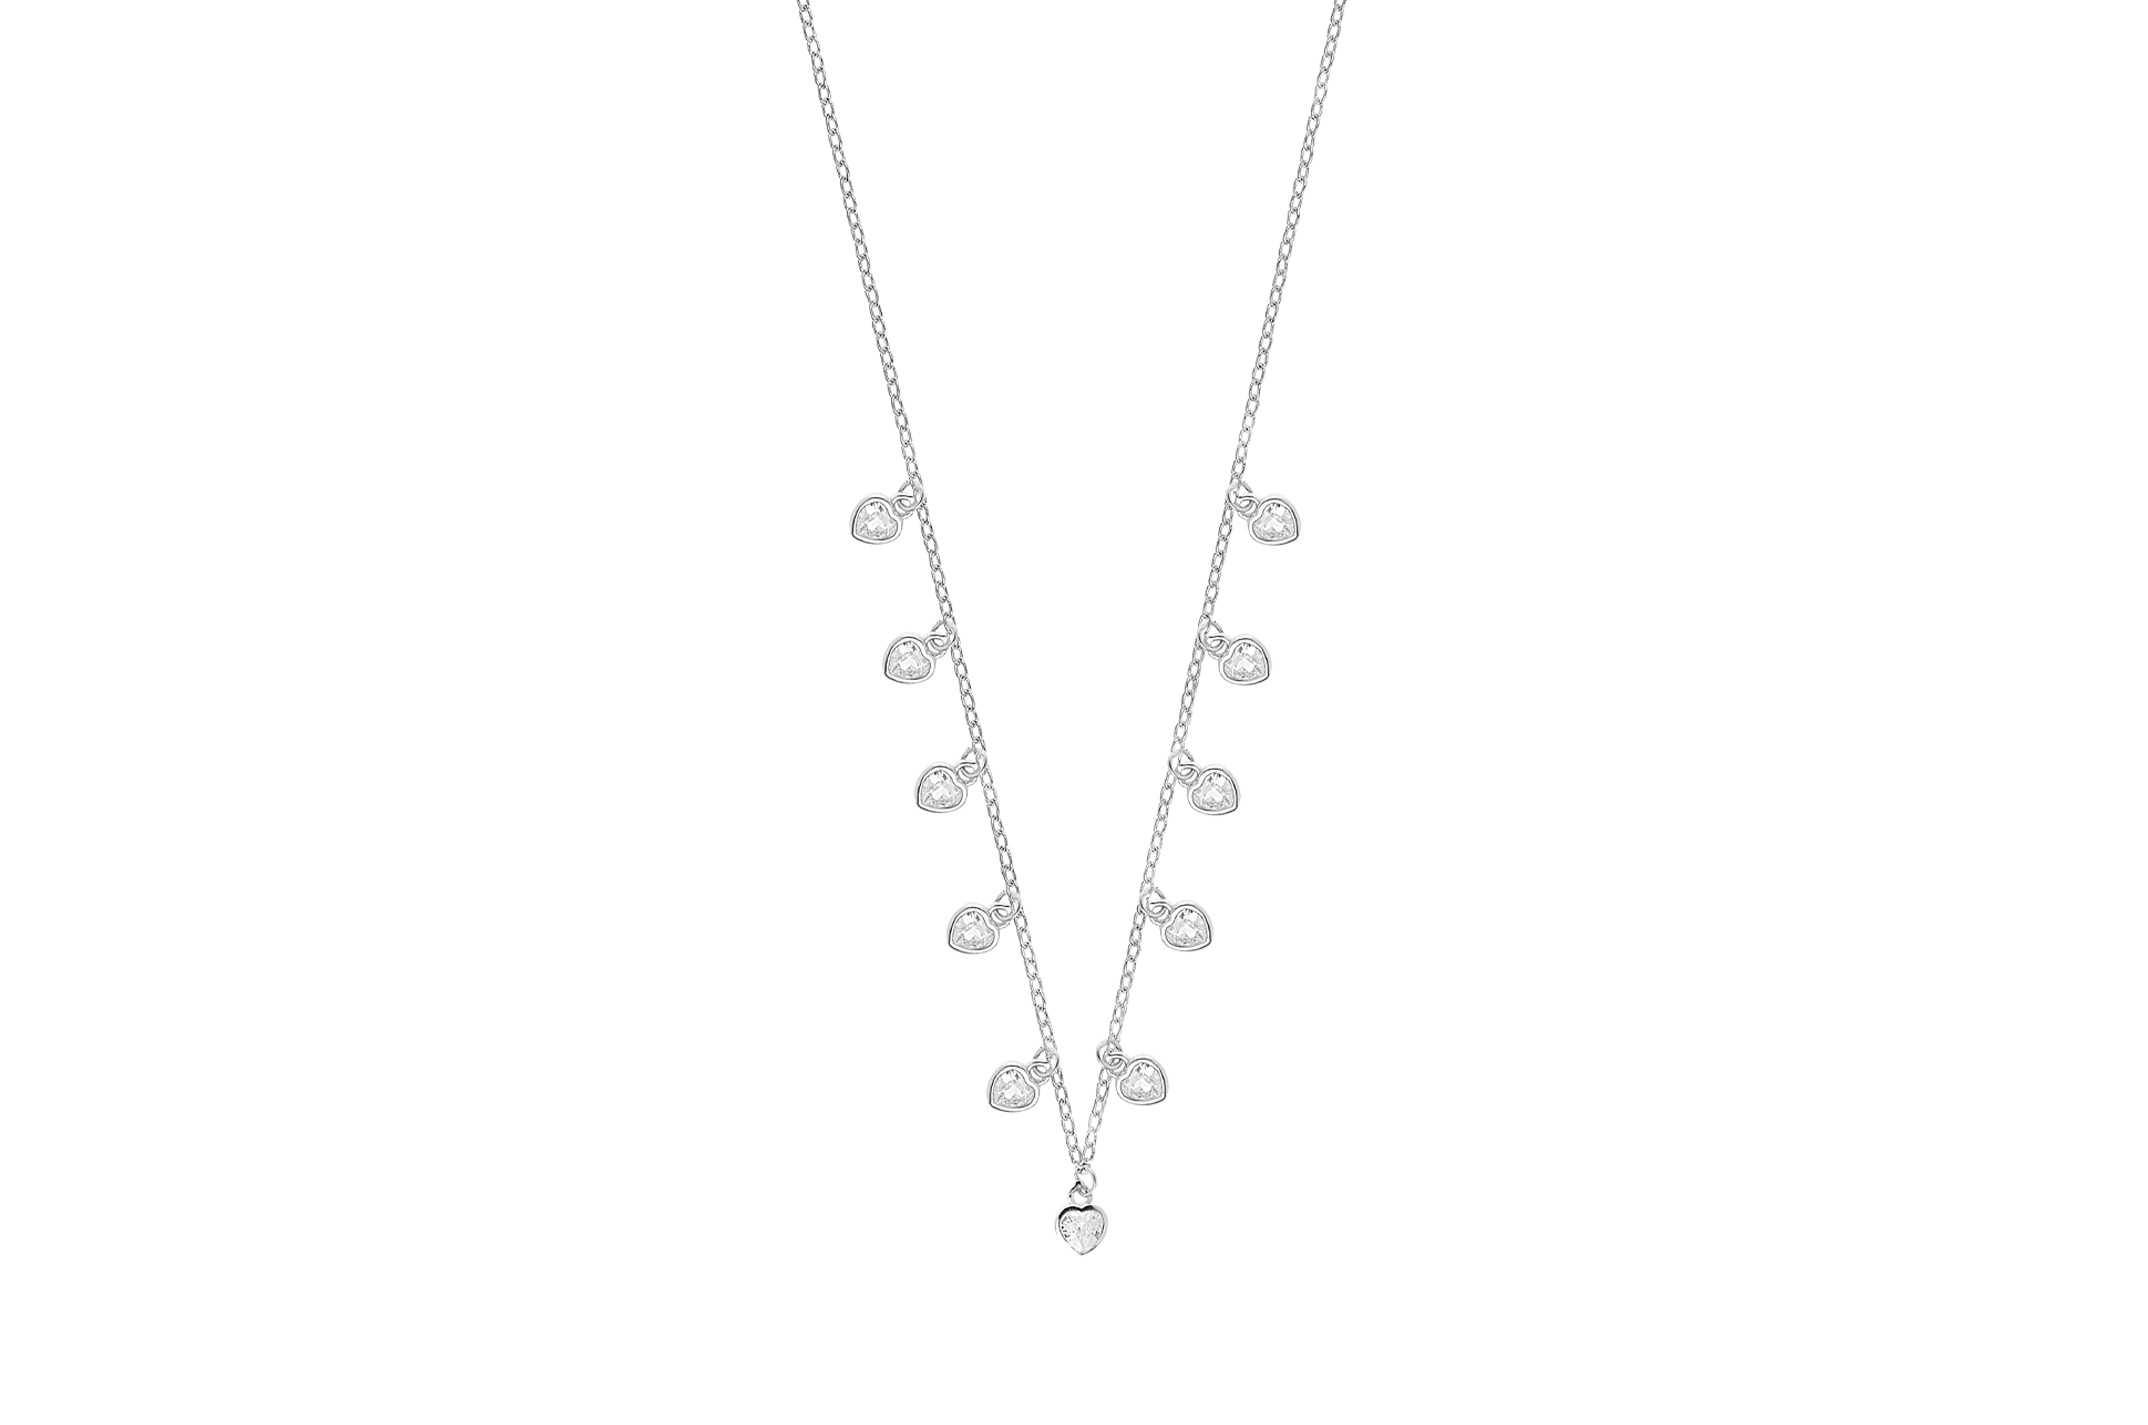 Joia: colar;Material: prata 925;Peso: 2.9 gr;Pedra: zircónia;Cor: branco;Medida: 38 cm + 5 cm;Medida pendente: 0.4 cm